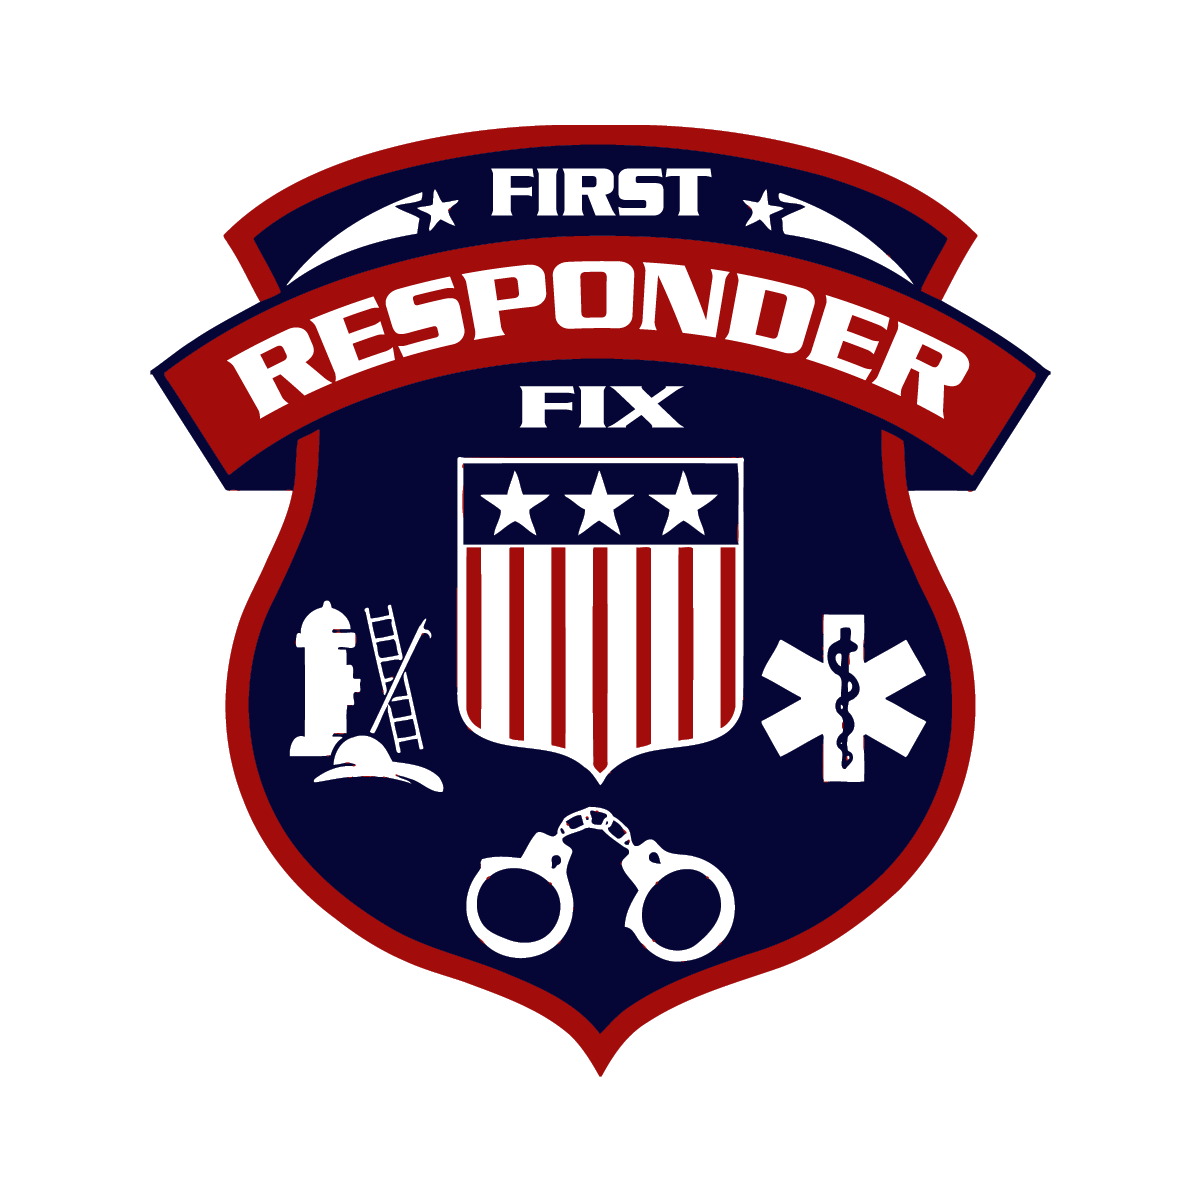 First Responder Fix